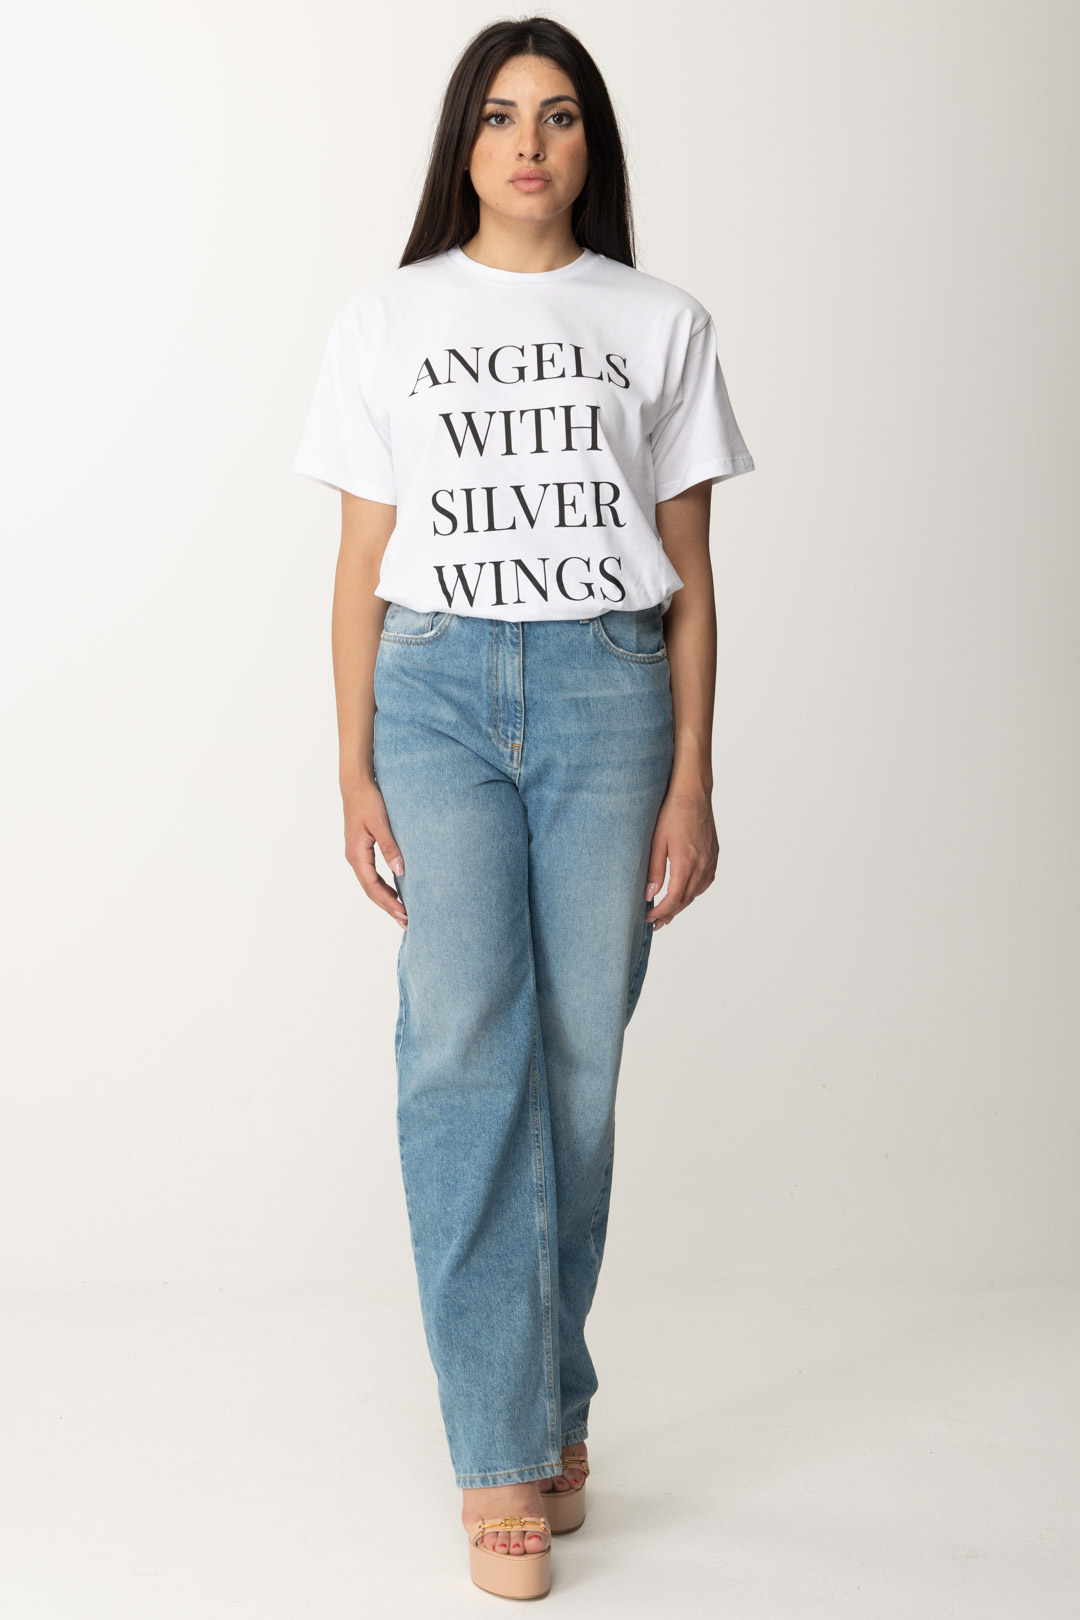 Vorschau: Elisabetta Franchi T-Shirt mit aufgedrucktem Schriftzug Gesso